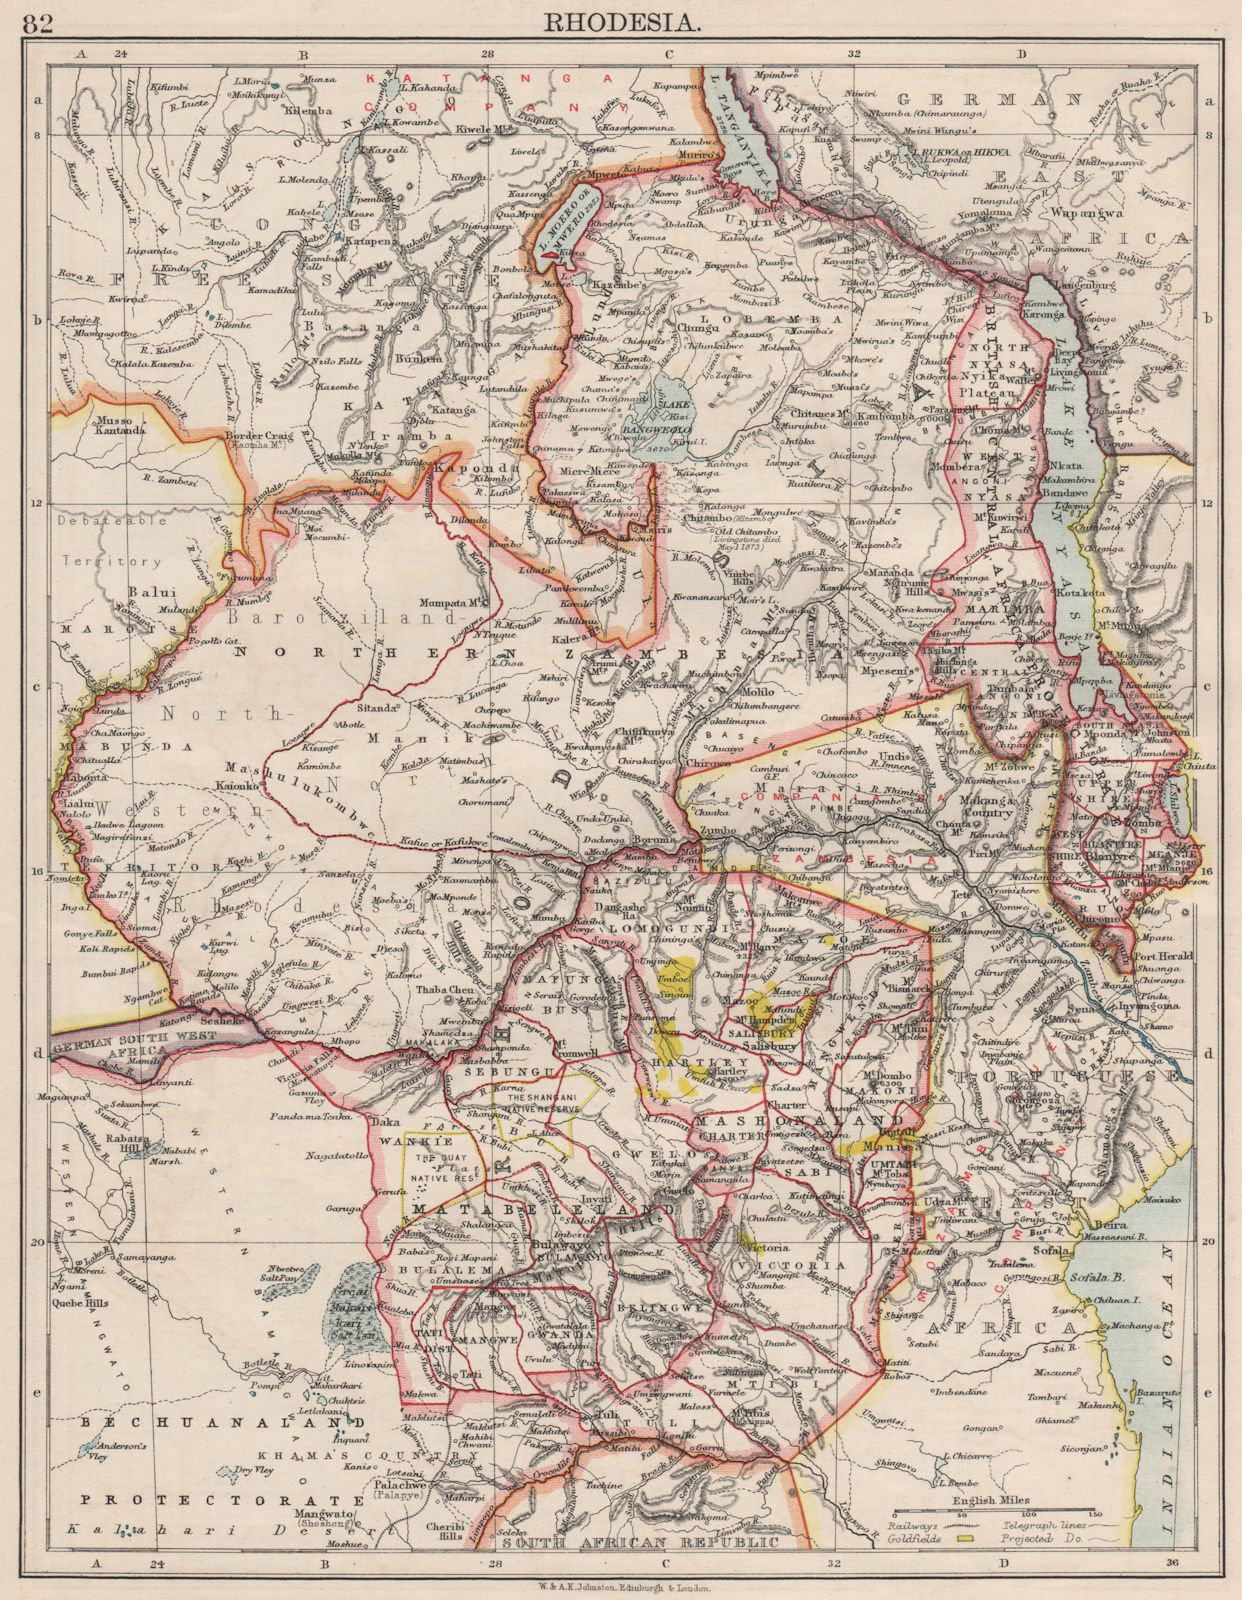 Associate Product RHODESIA. Goldfields (yellow). Zambesia. Zambia Malawi Zimbabwe 1900 map